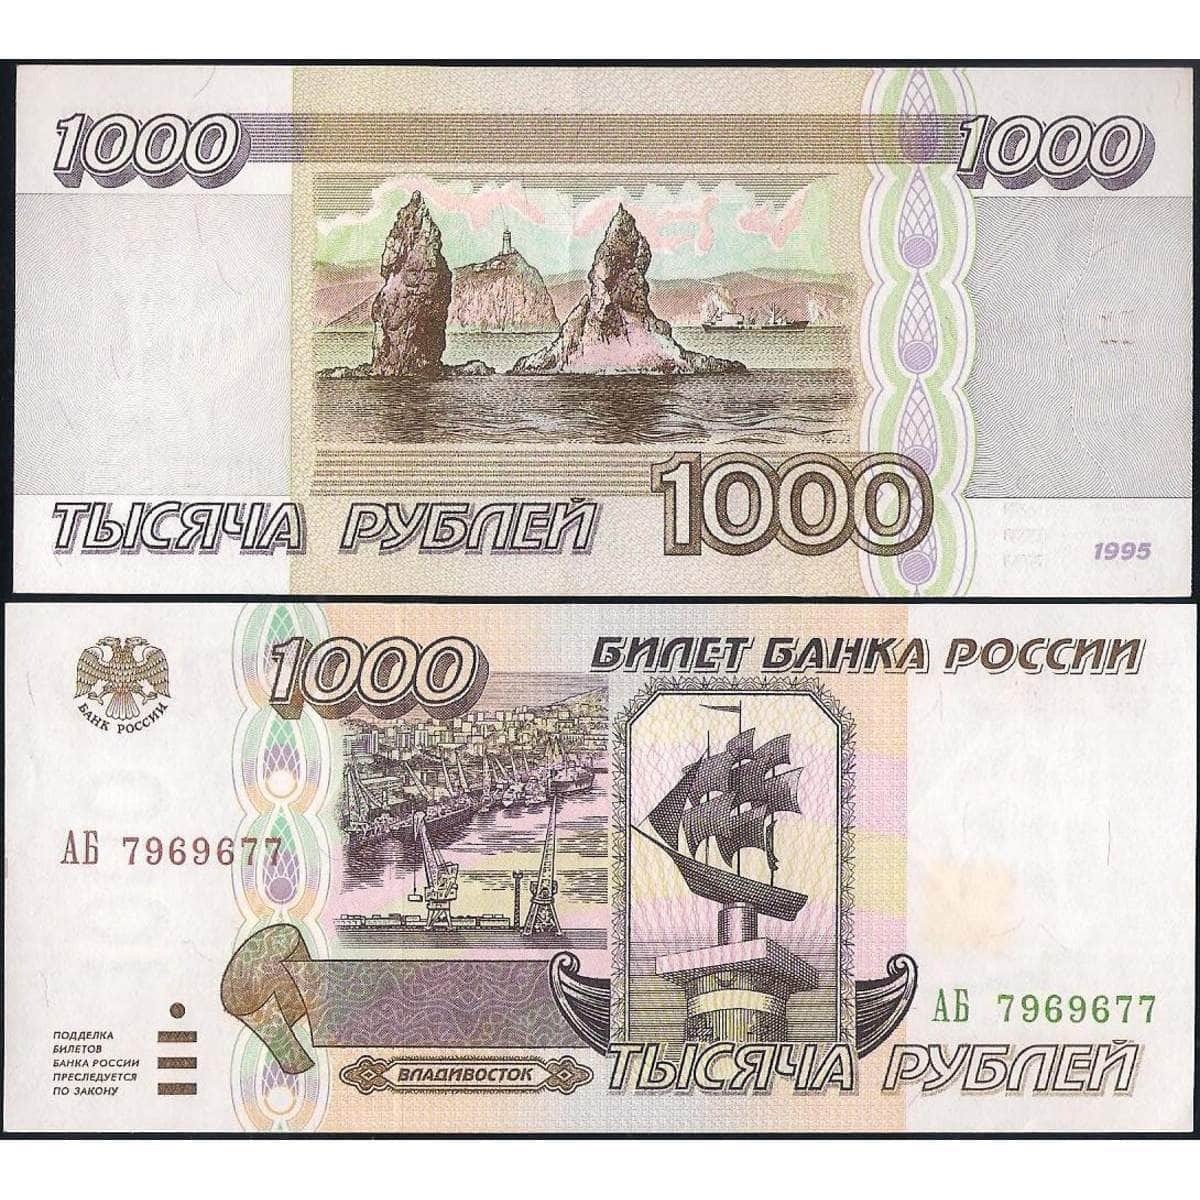 1000000 рублей россии. Тысяча рублей 1995 года. 1000 Рублей 1995 года бумажные. 1000 Купюра 1995 года. Деньги 1000 рублей 1995 года.